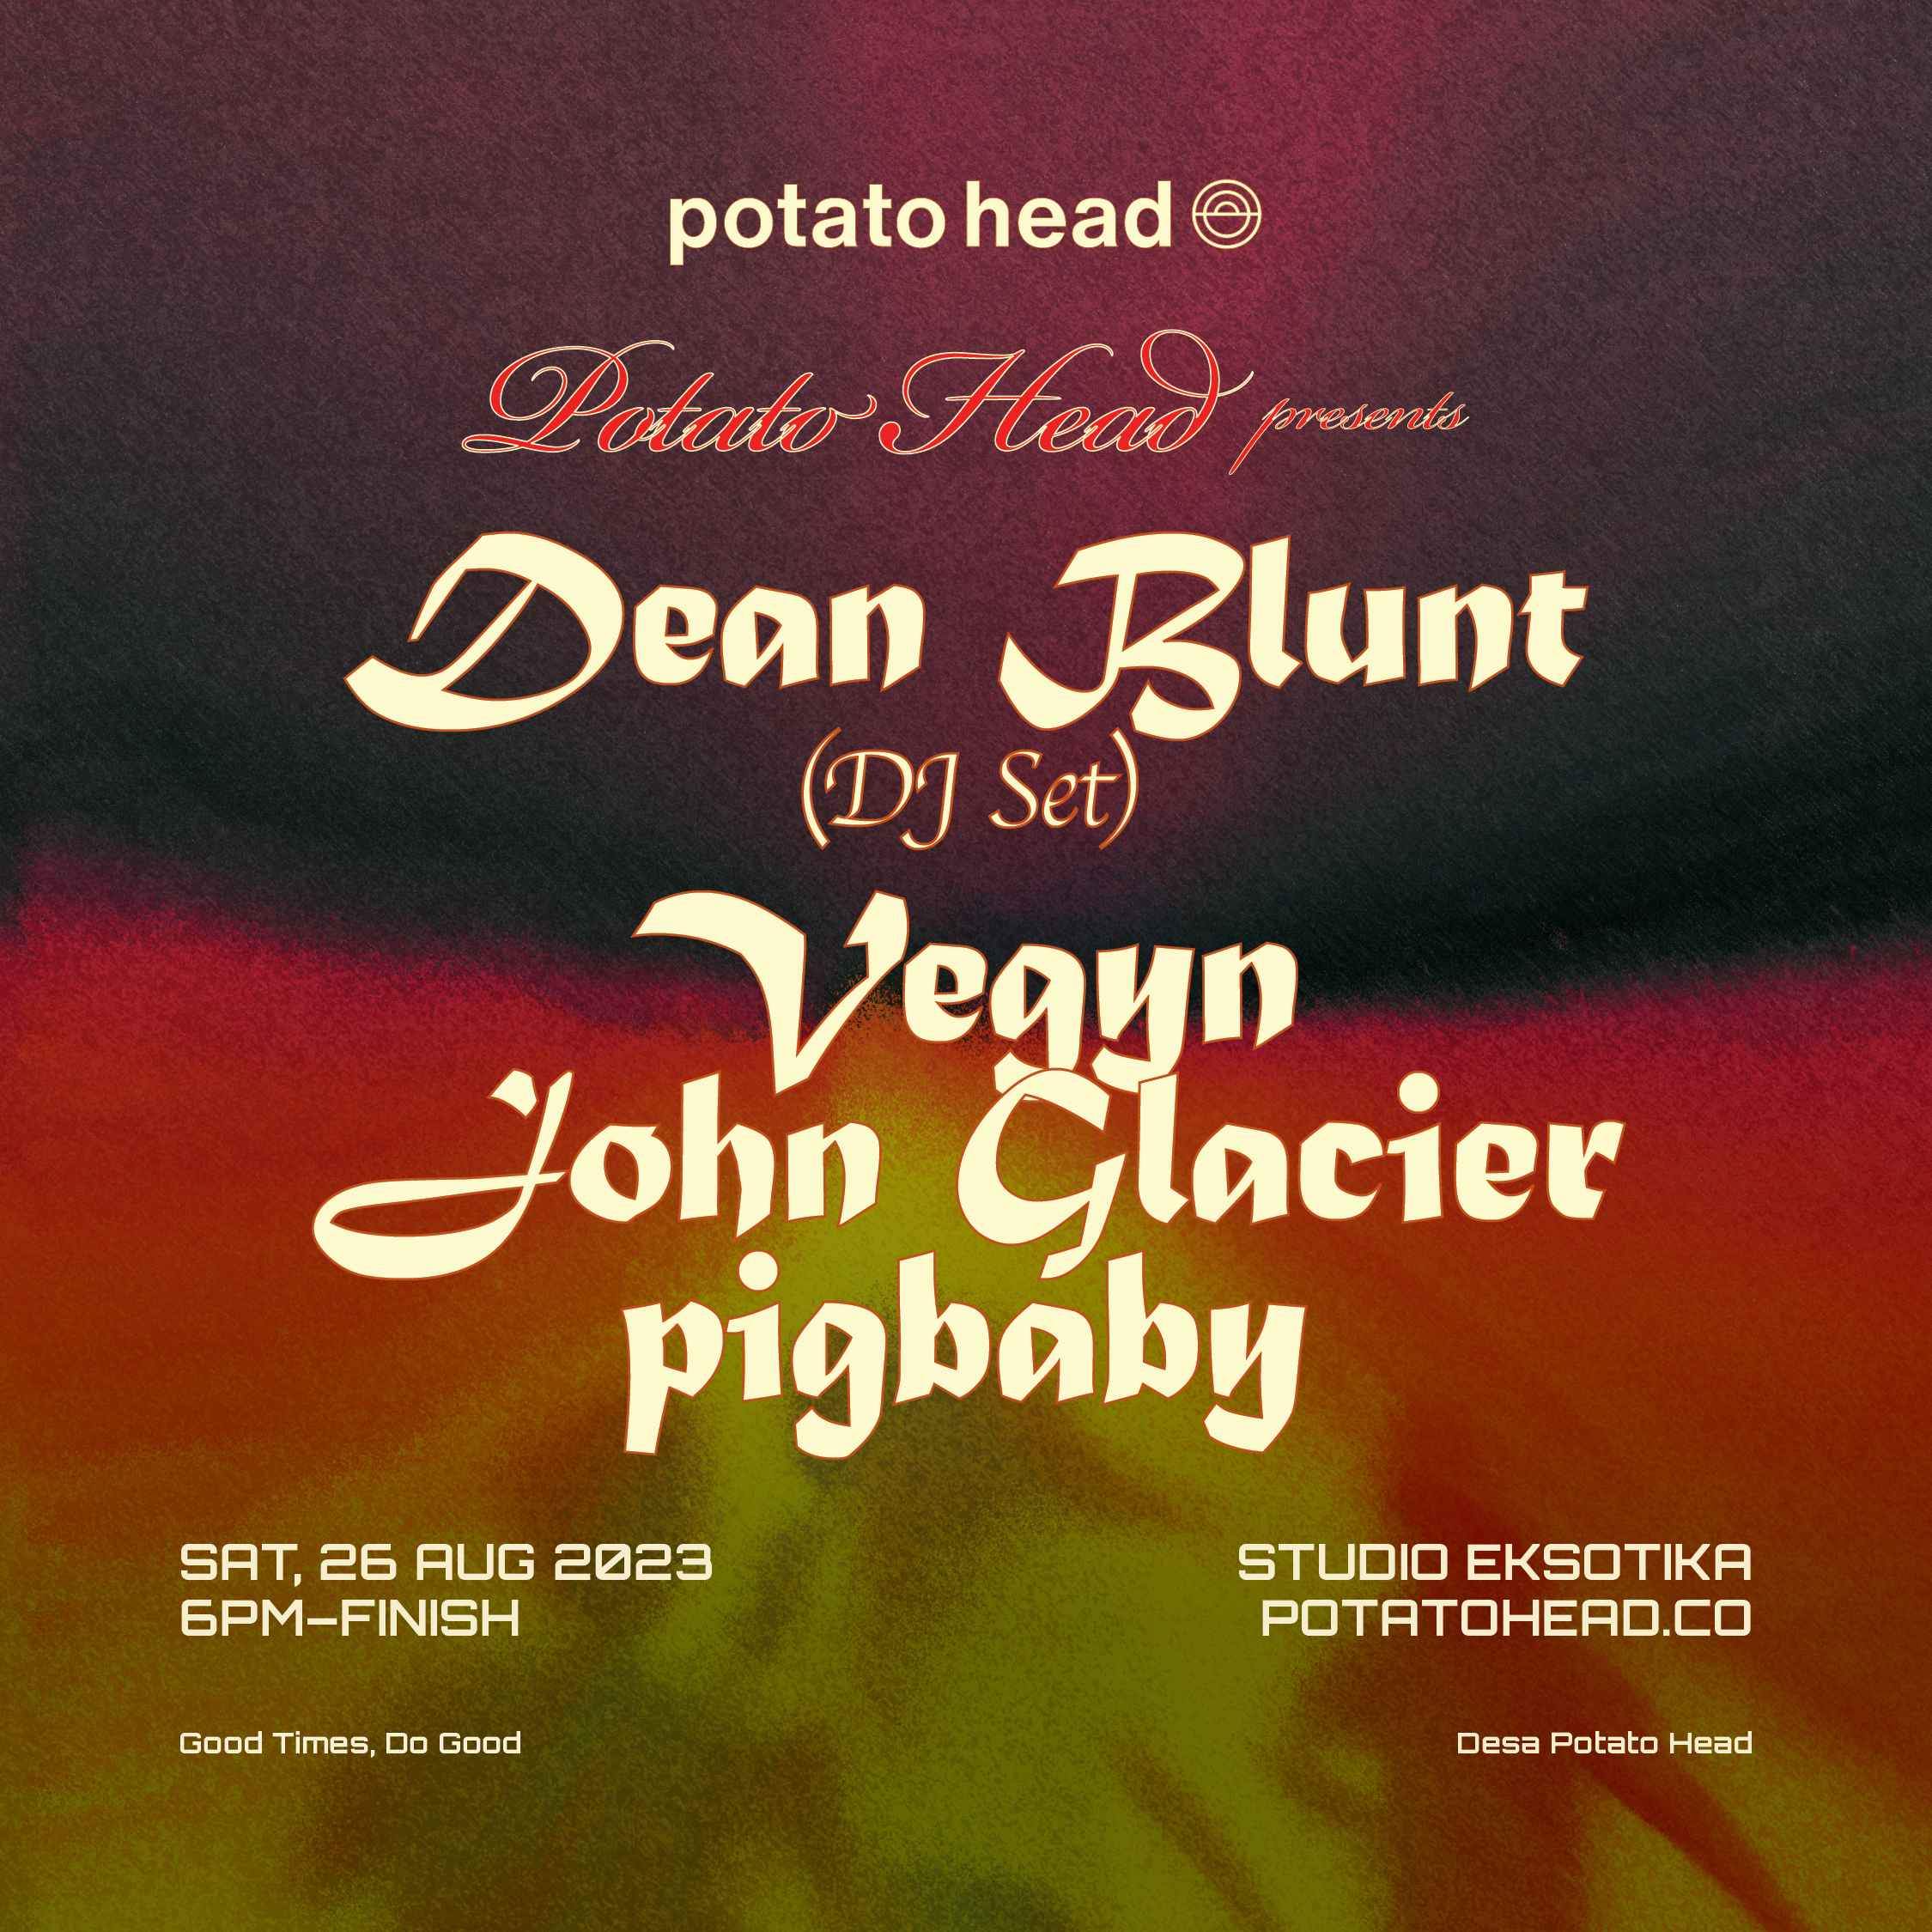 potato head presents: Dean Blunt (dj set), Vegyn and many more - フライヤー表